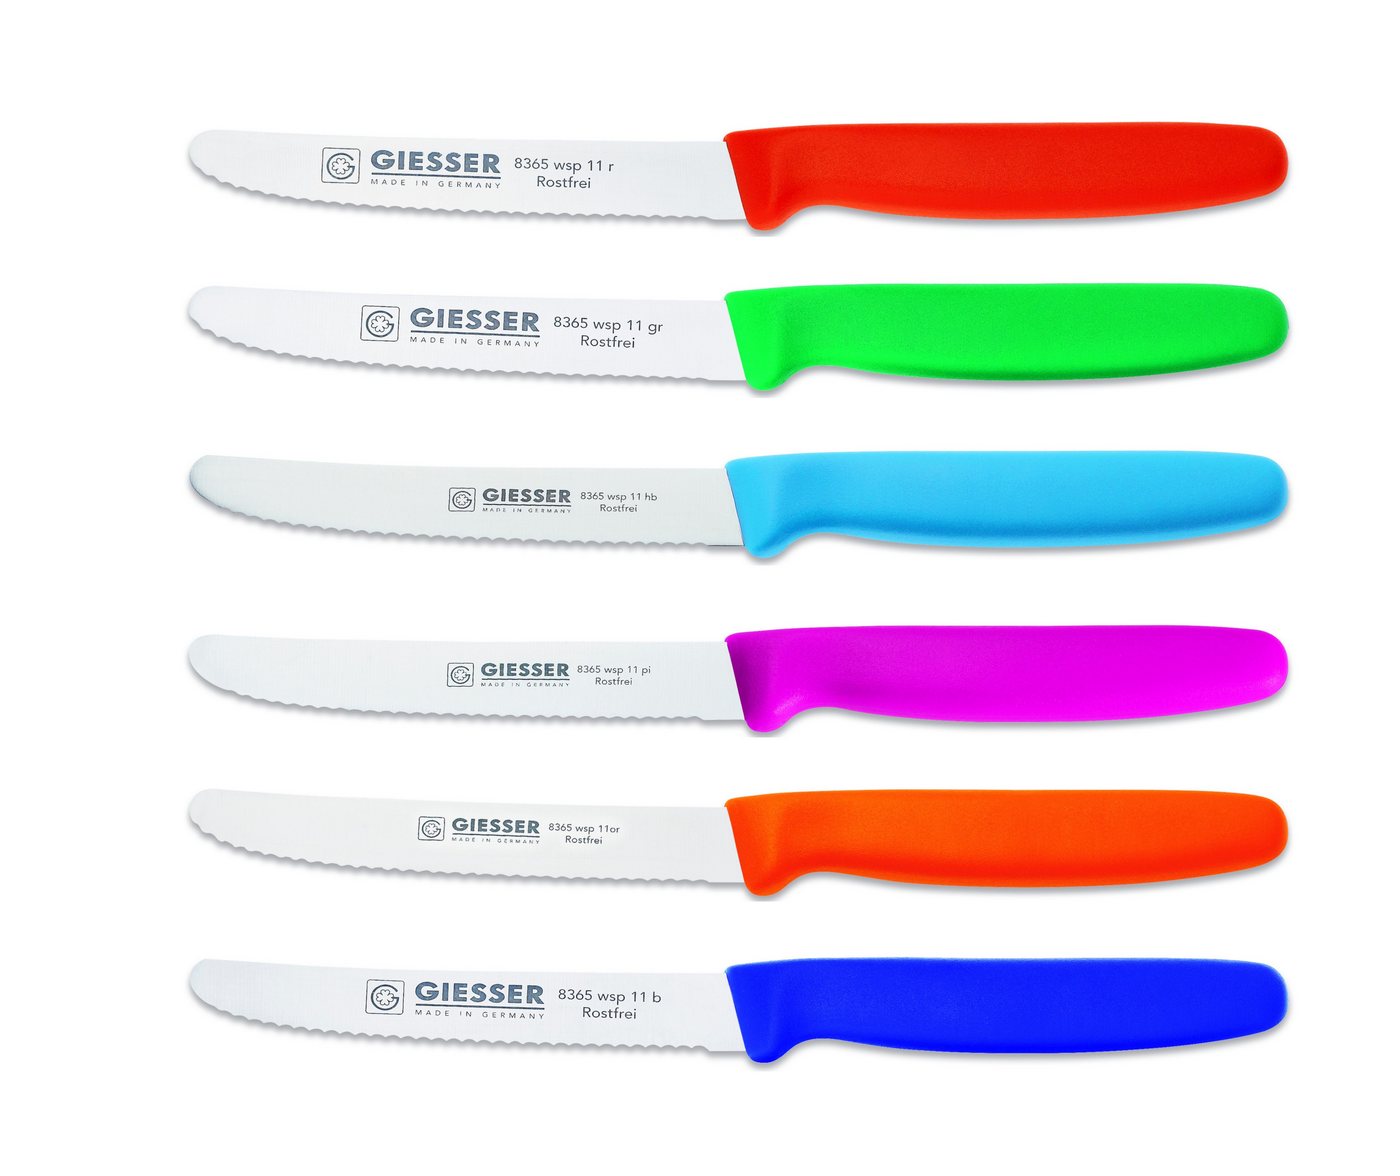 Giesser Messer Tomatenmesser Brötchenmesser 8365 wsp 11-6, 6er Set bunt gemischt, 3mm Wellenschliff, extrem Scharf von Giesser Messer